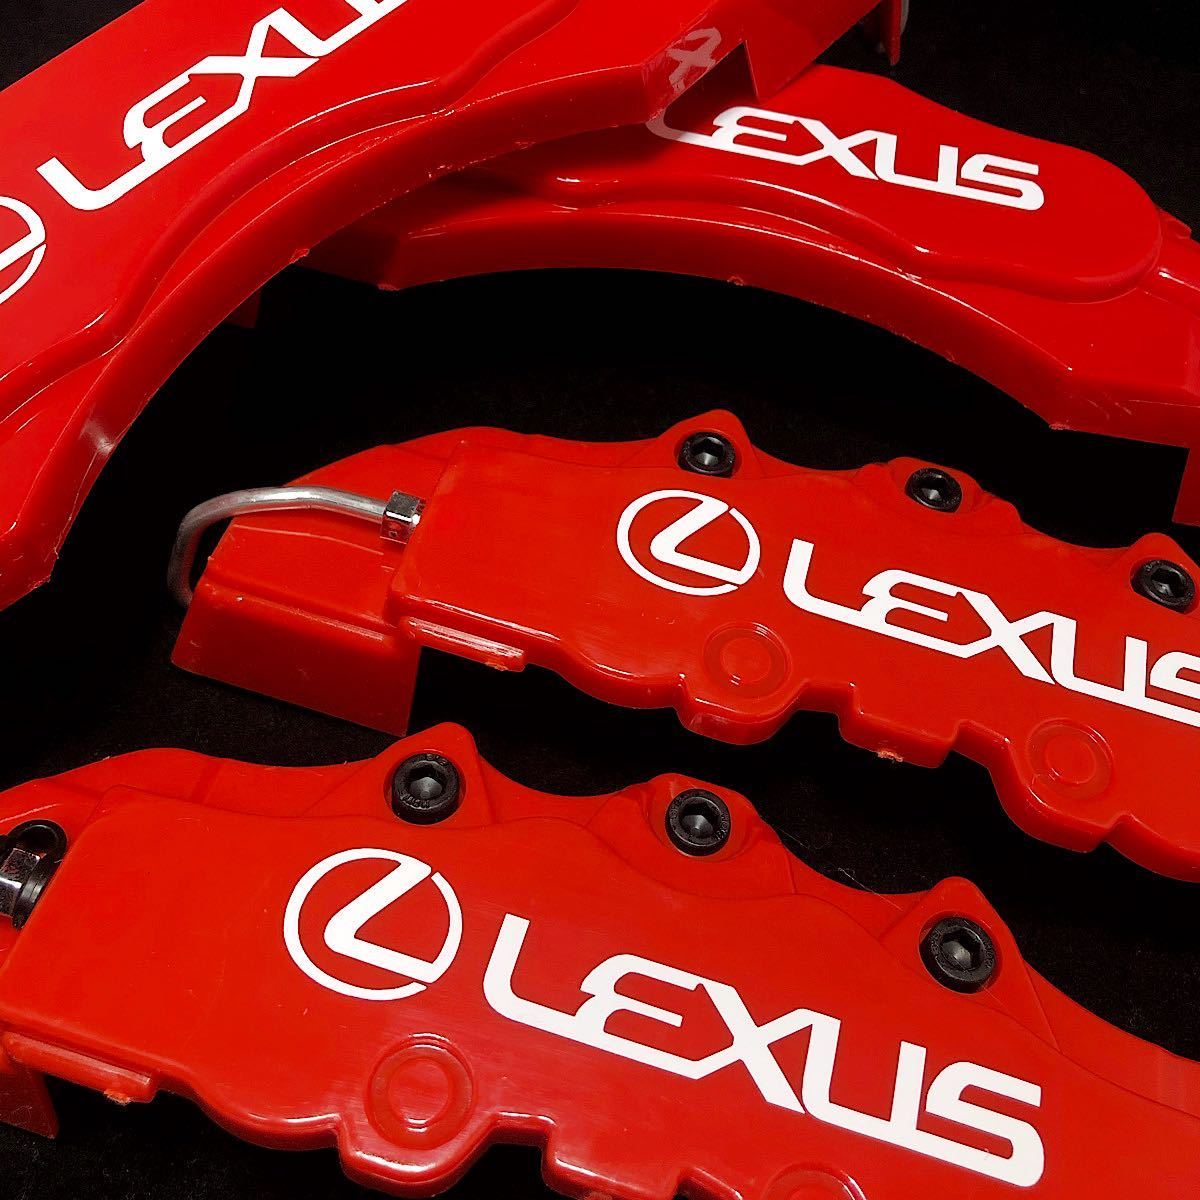 【金属黒ボルト】LEXUS キャリパーカバー レクサス ブレーキ 4個1台分 LMサイズ LS GS IS ES HS RX NX LX LC RC CT UX